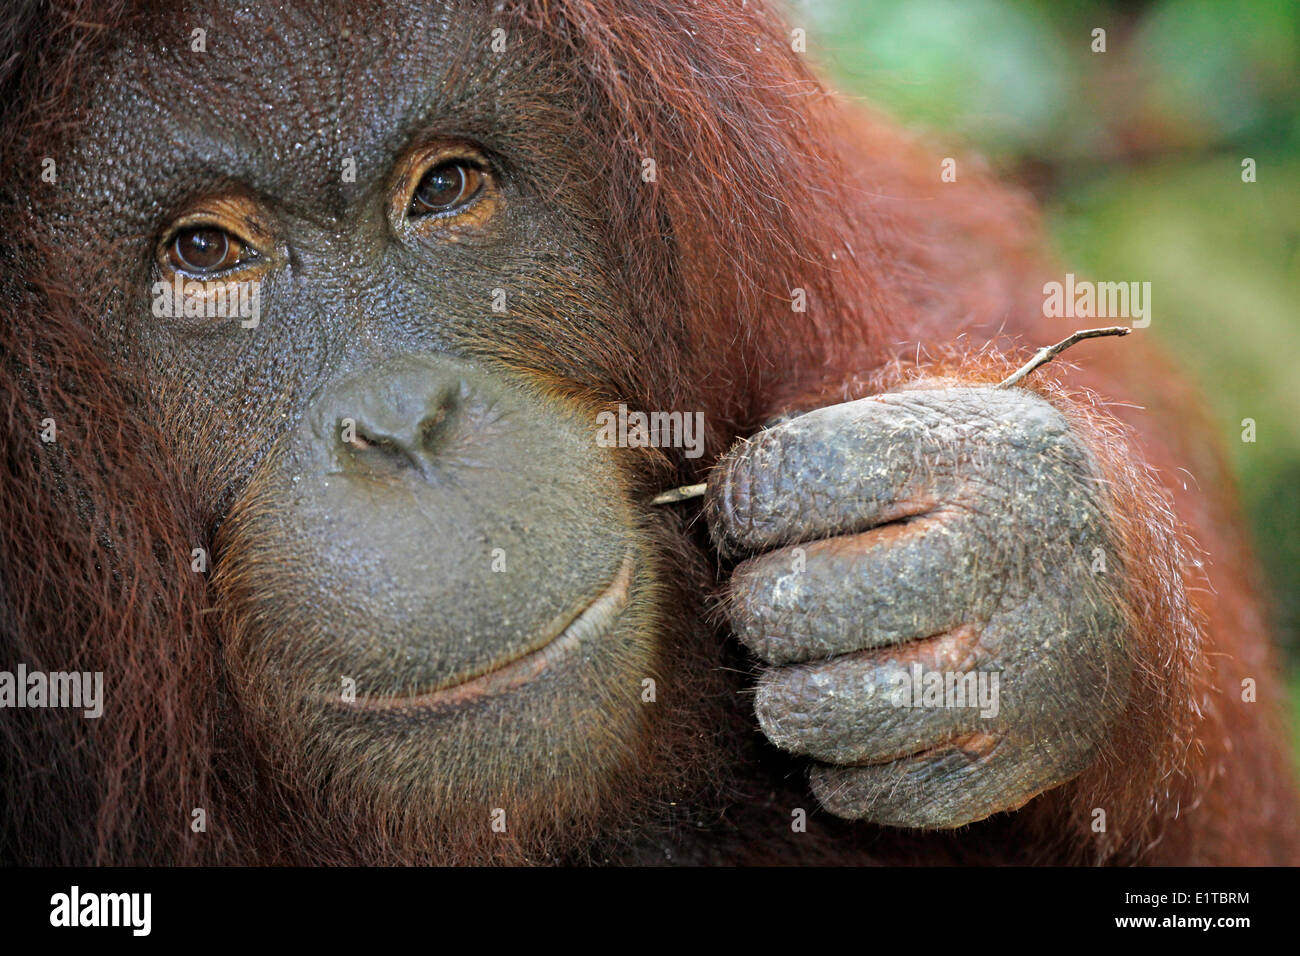 Foto von einem Erwachsenen Orang-Utan mit einem Stock als Toothpicker Werkzeug Stockfoto